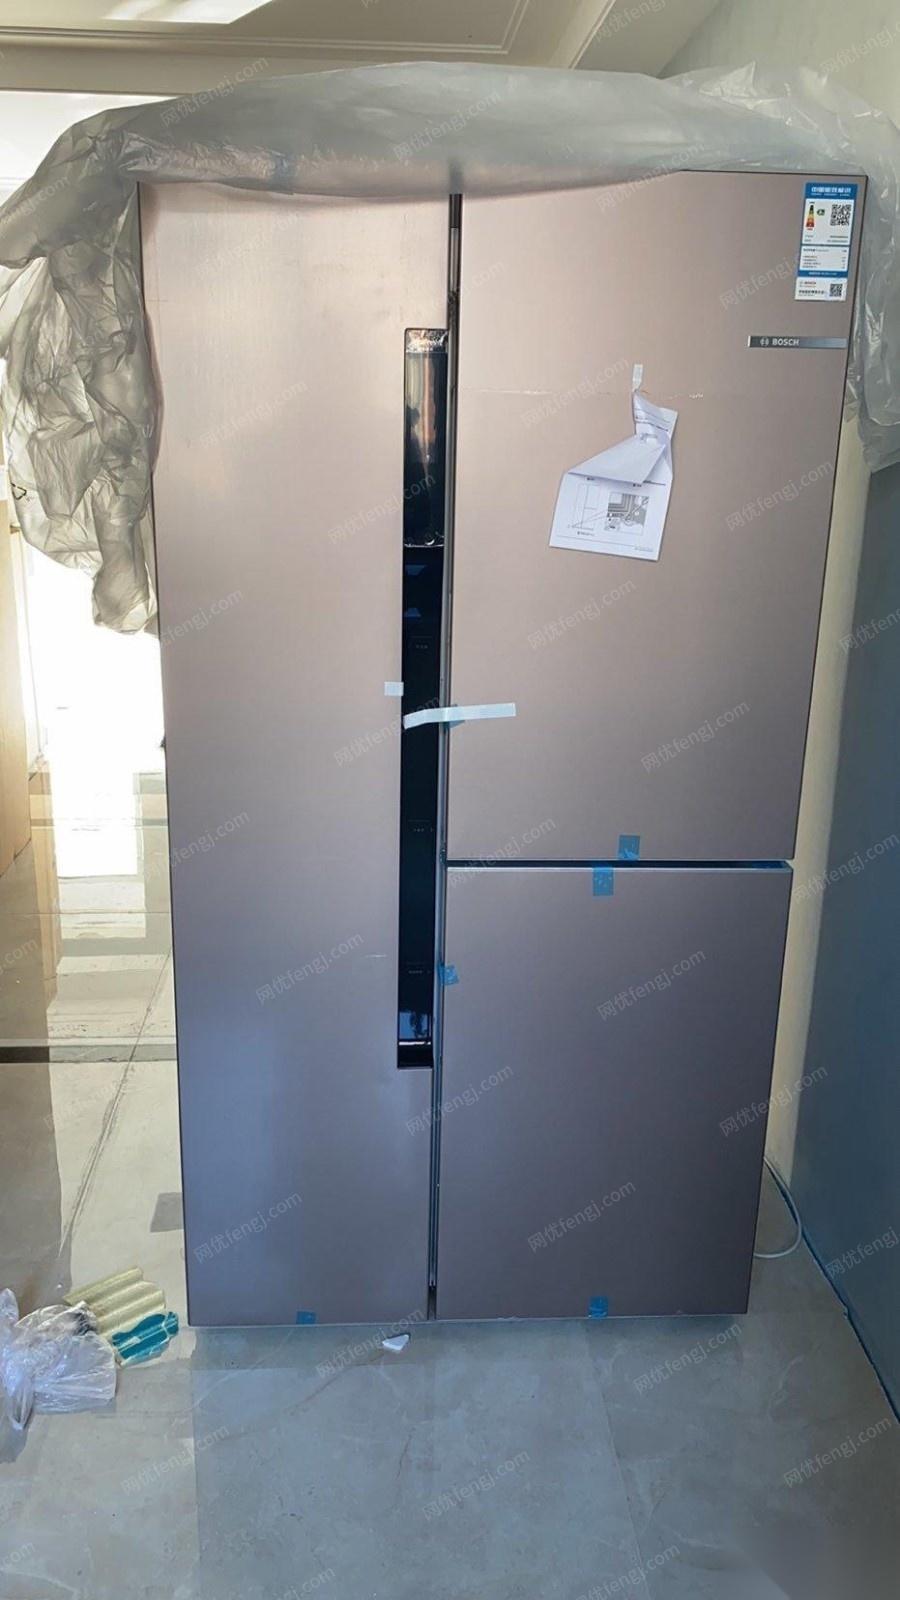 天津宝坻区 因尺寸问题出售博世对开门冰箱一个忍痛转让 全新未用